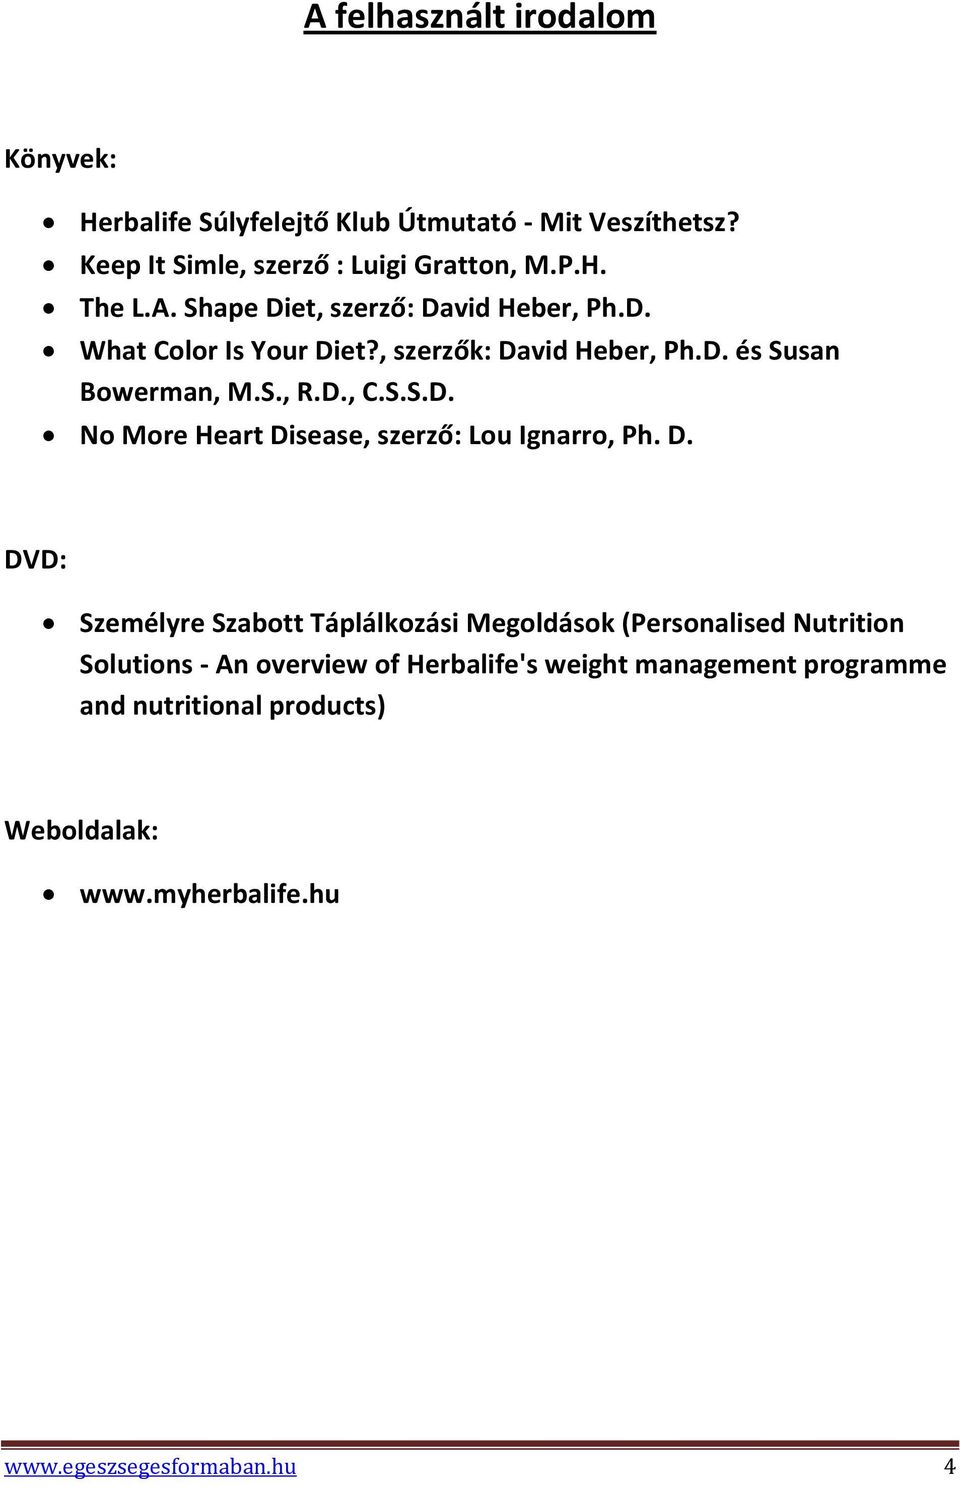 D. DVD: Személyre Szabott Táplálkozási Megoldások (Personalised Nutrition Solutions - An overview of Herbalife's weight management